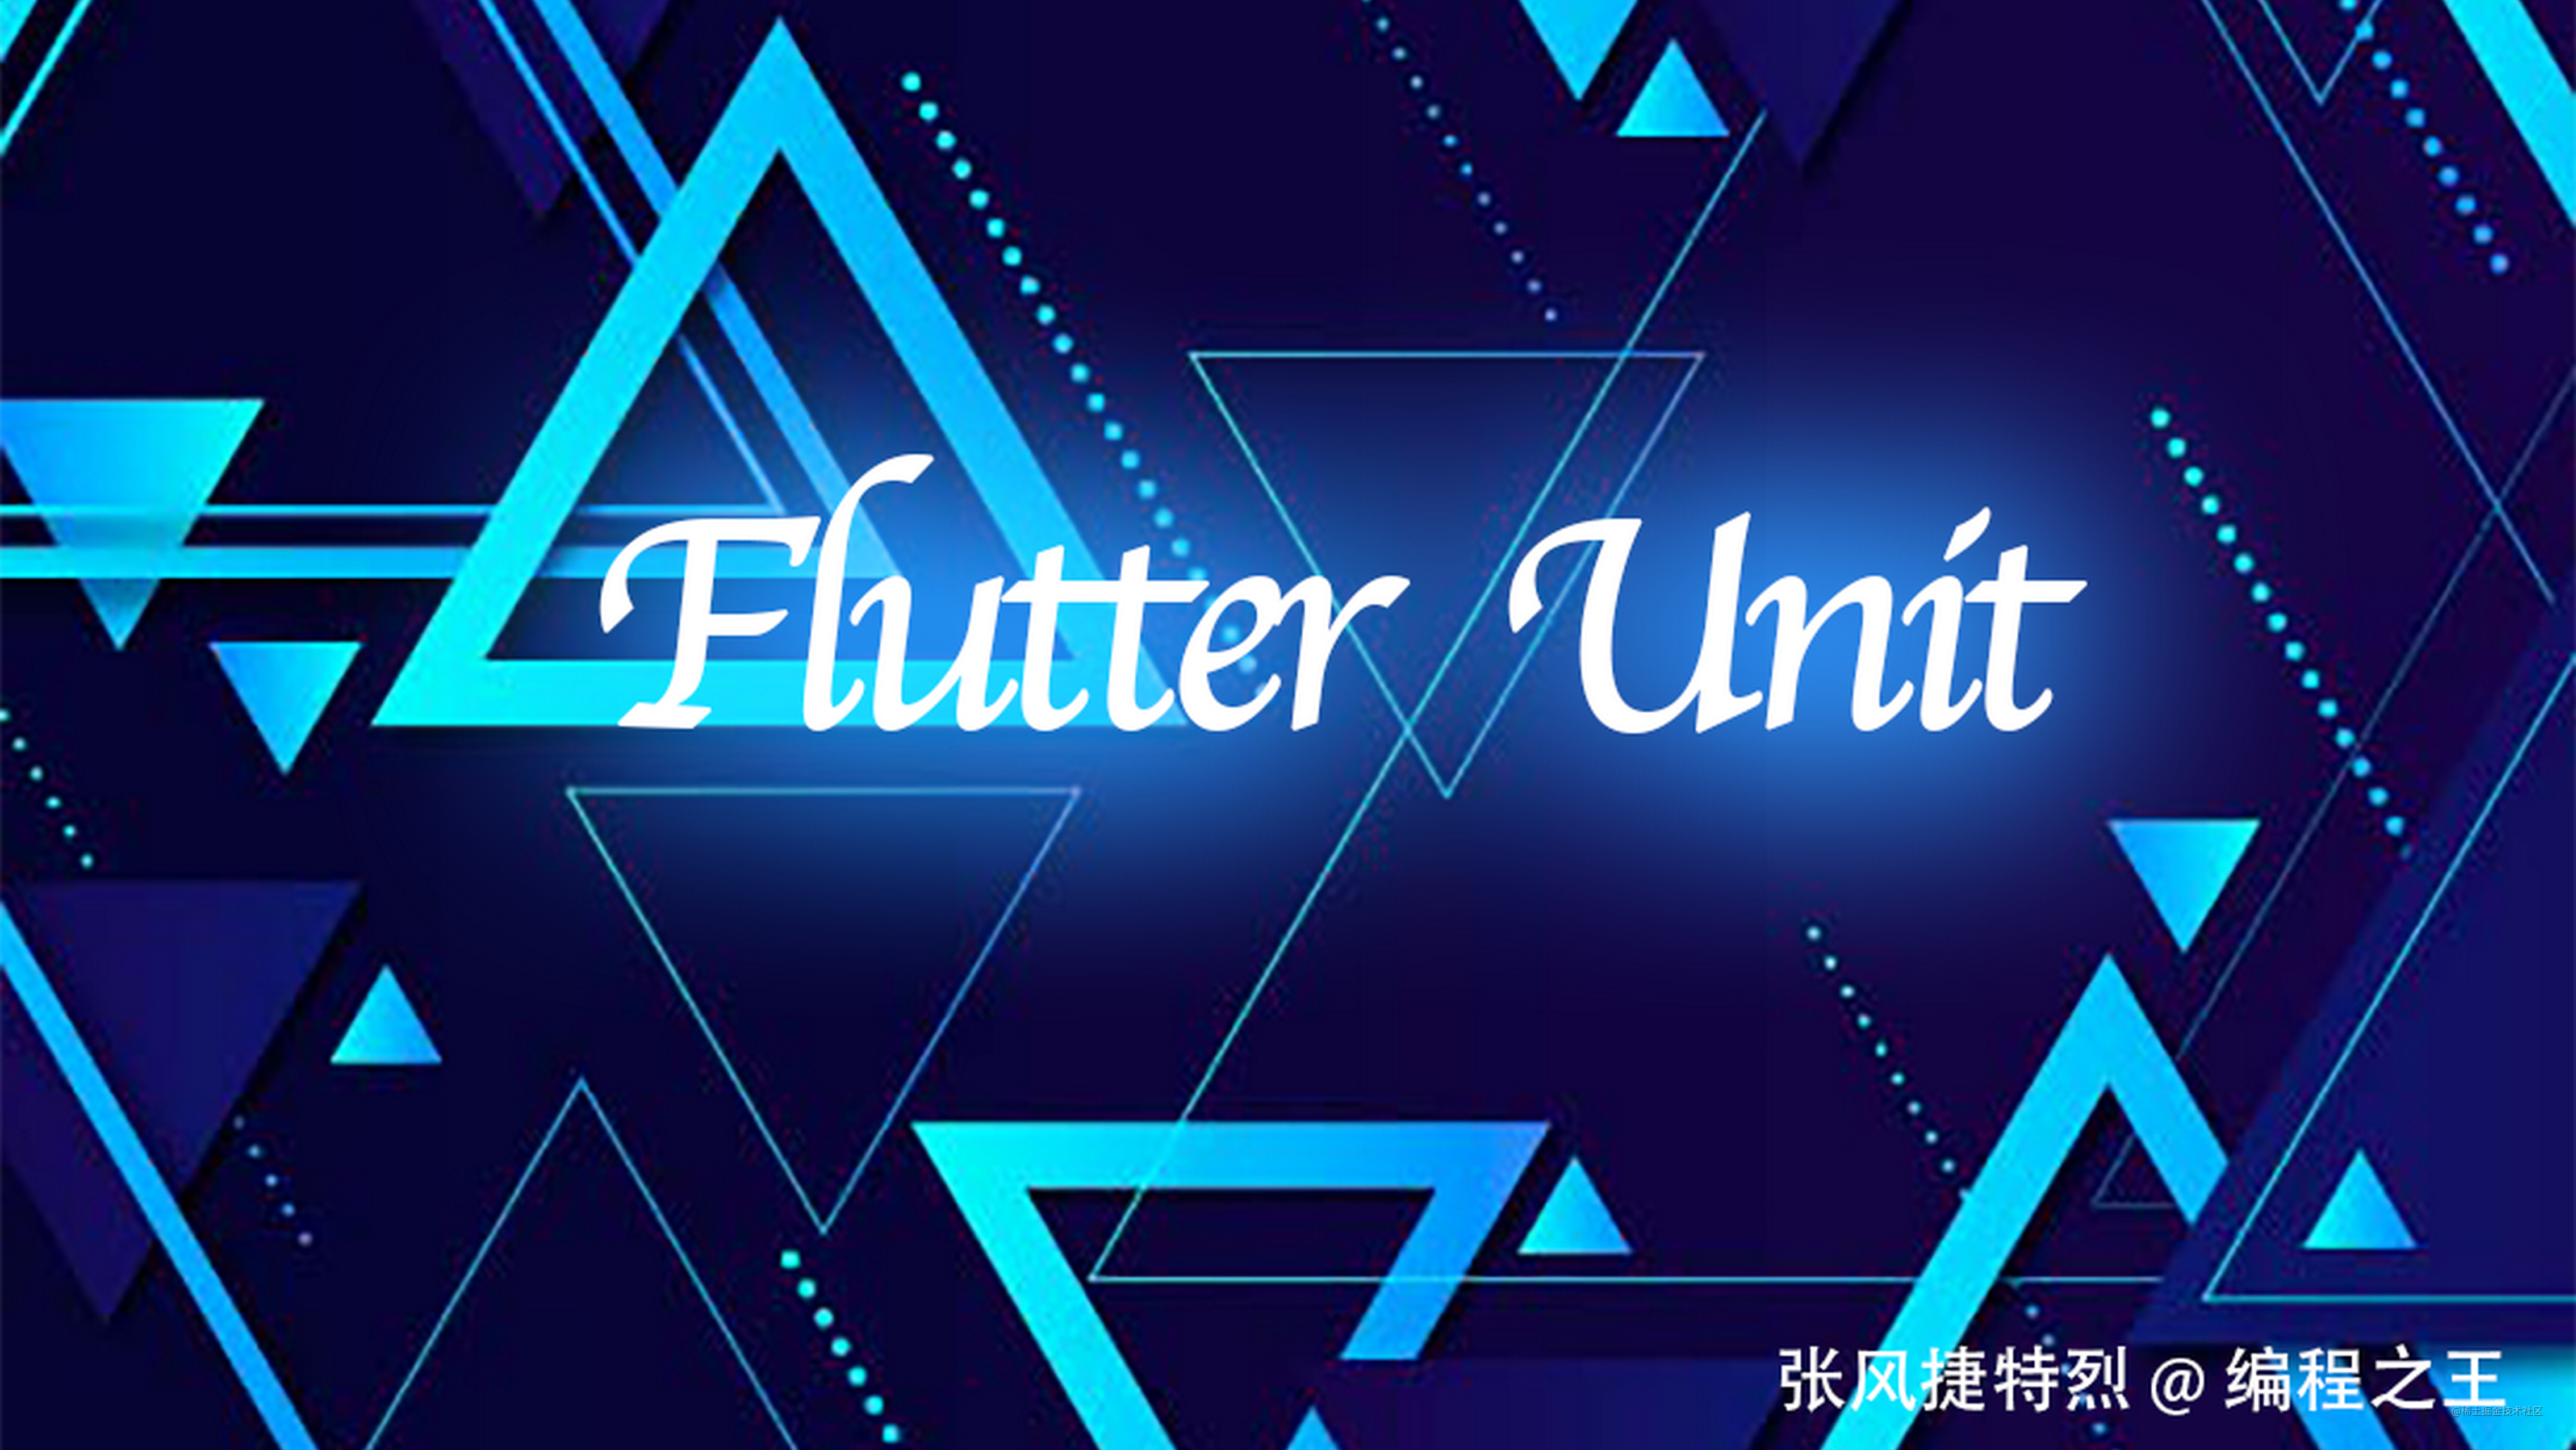 我的 FlutterUnit 开源项目竟然被套壳商用了